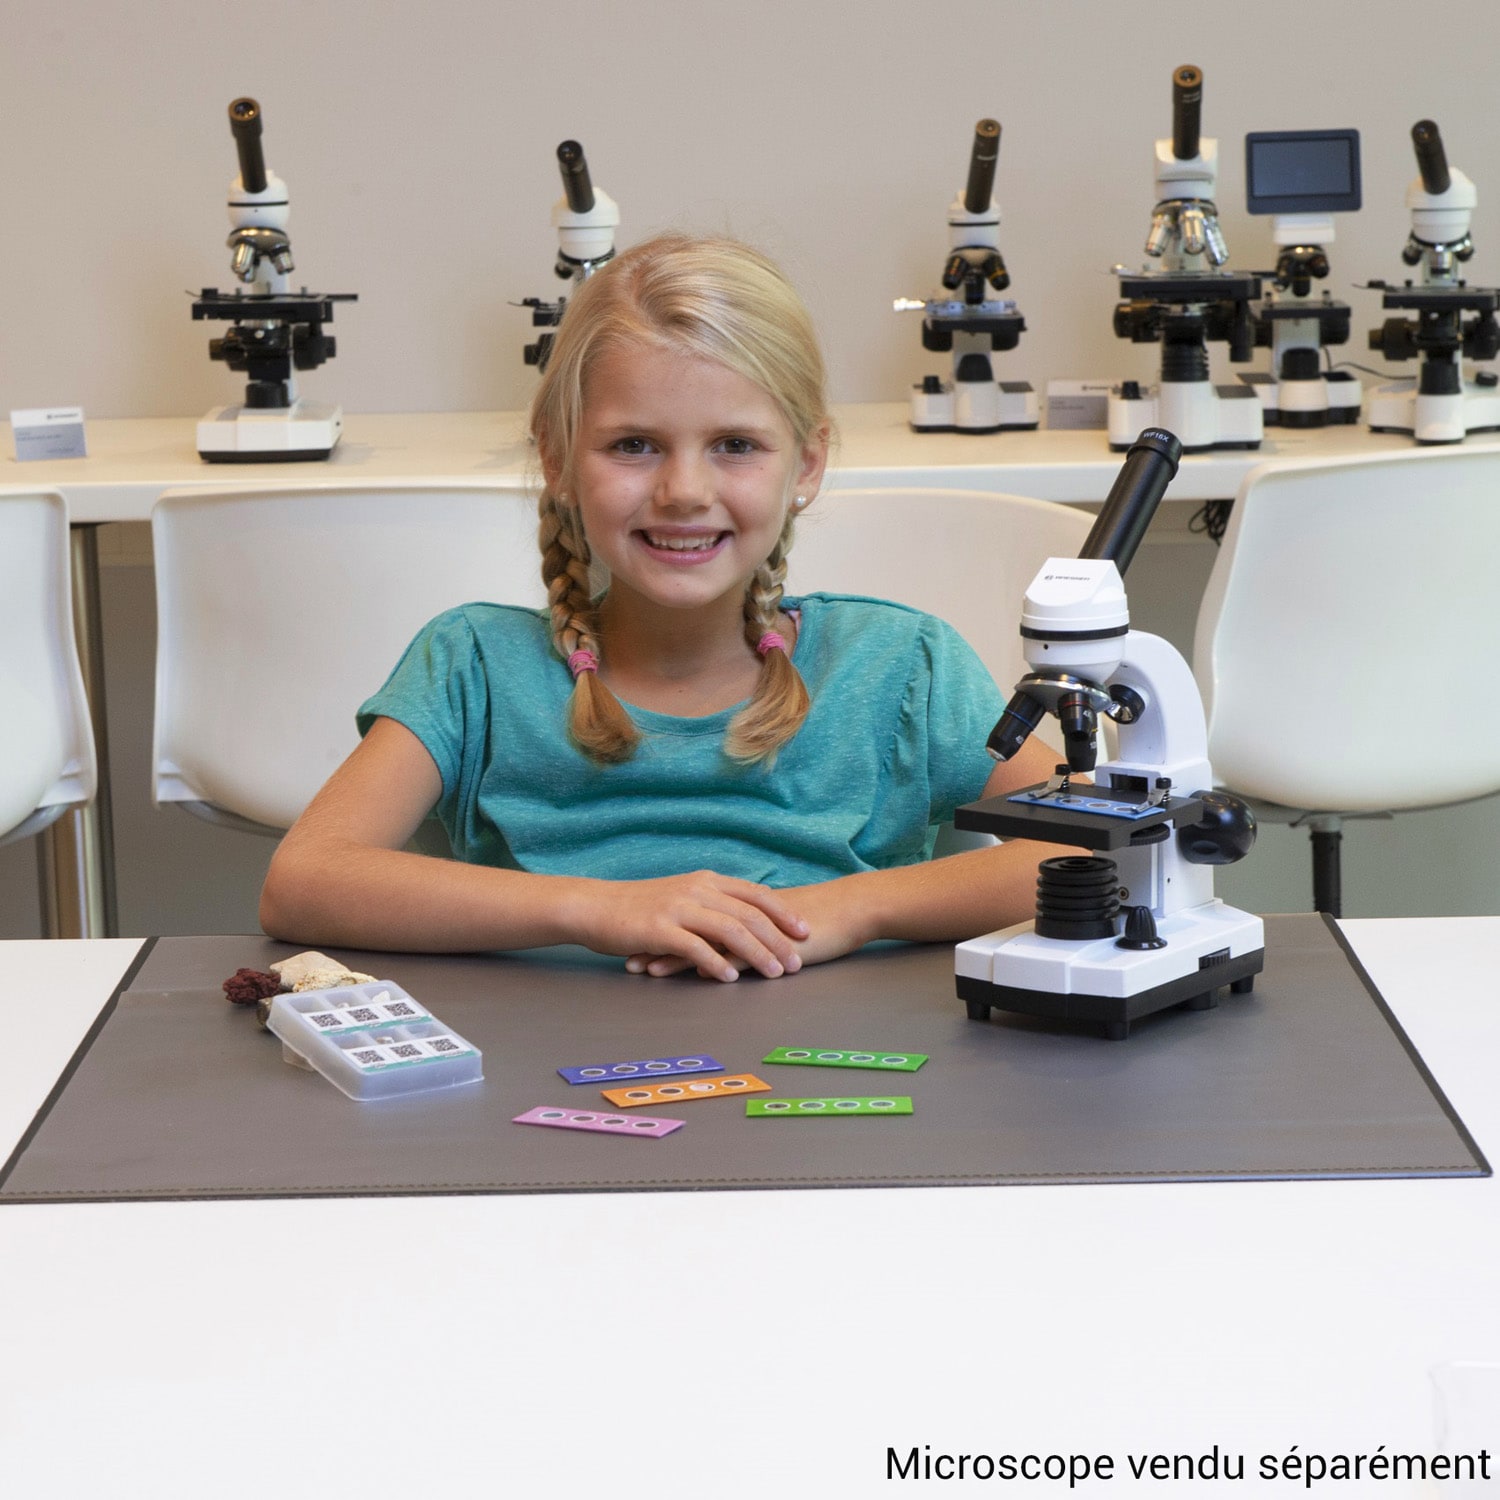 Lames de microscope préparées - ensemble biologie - Funique